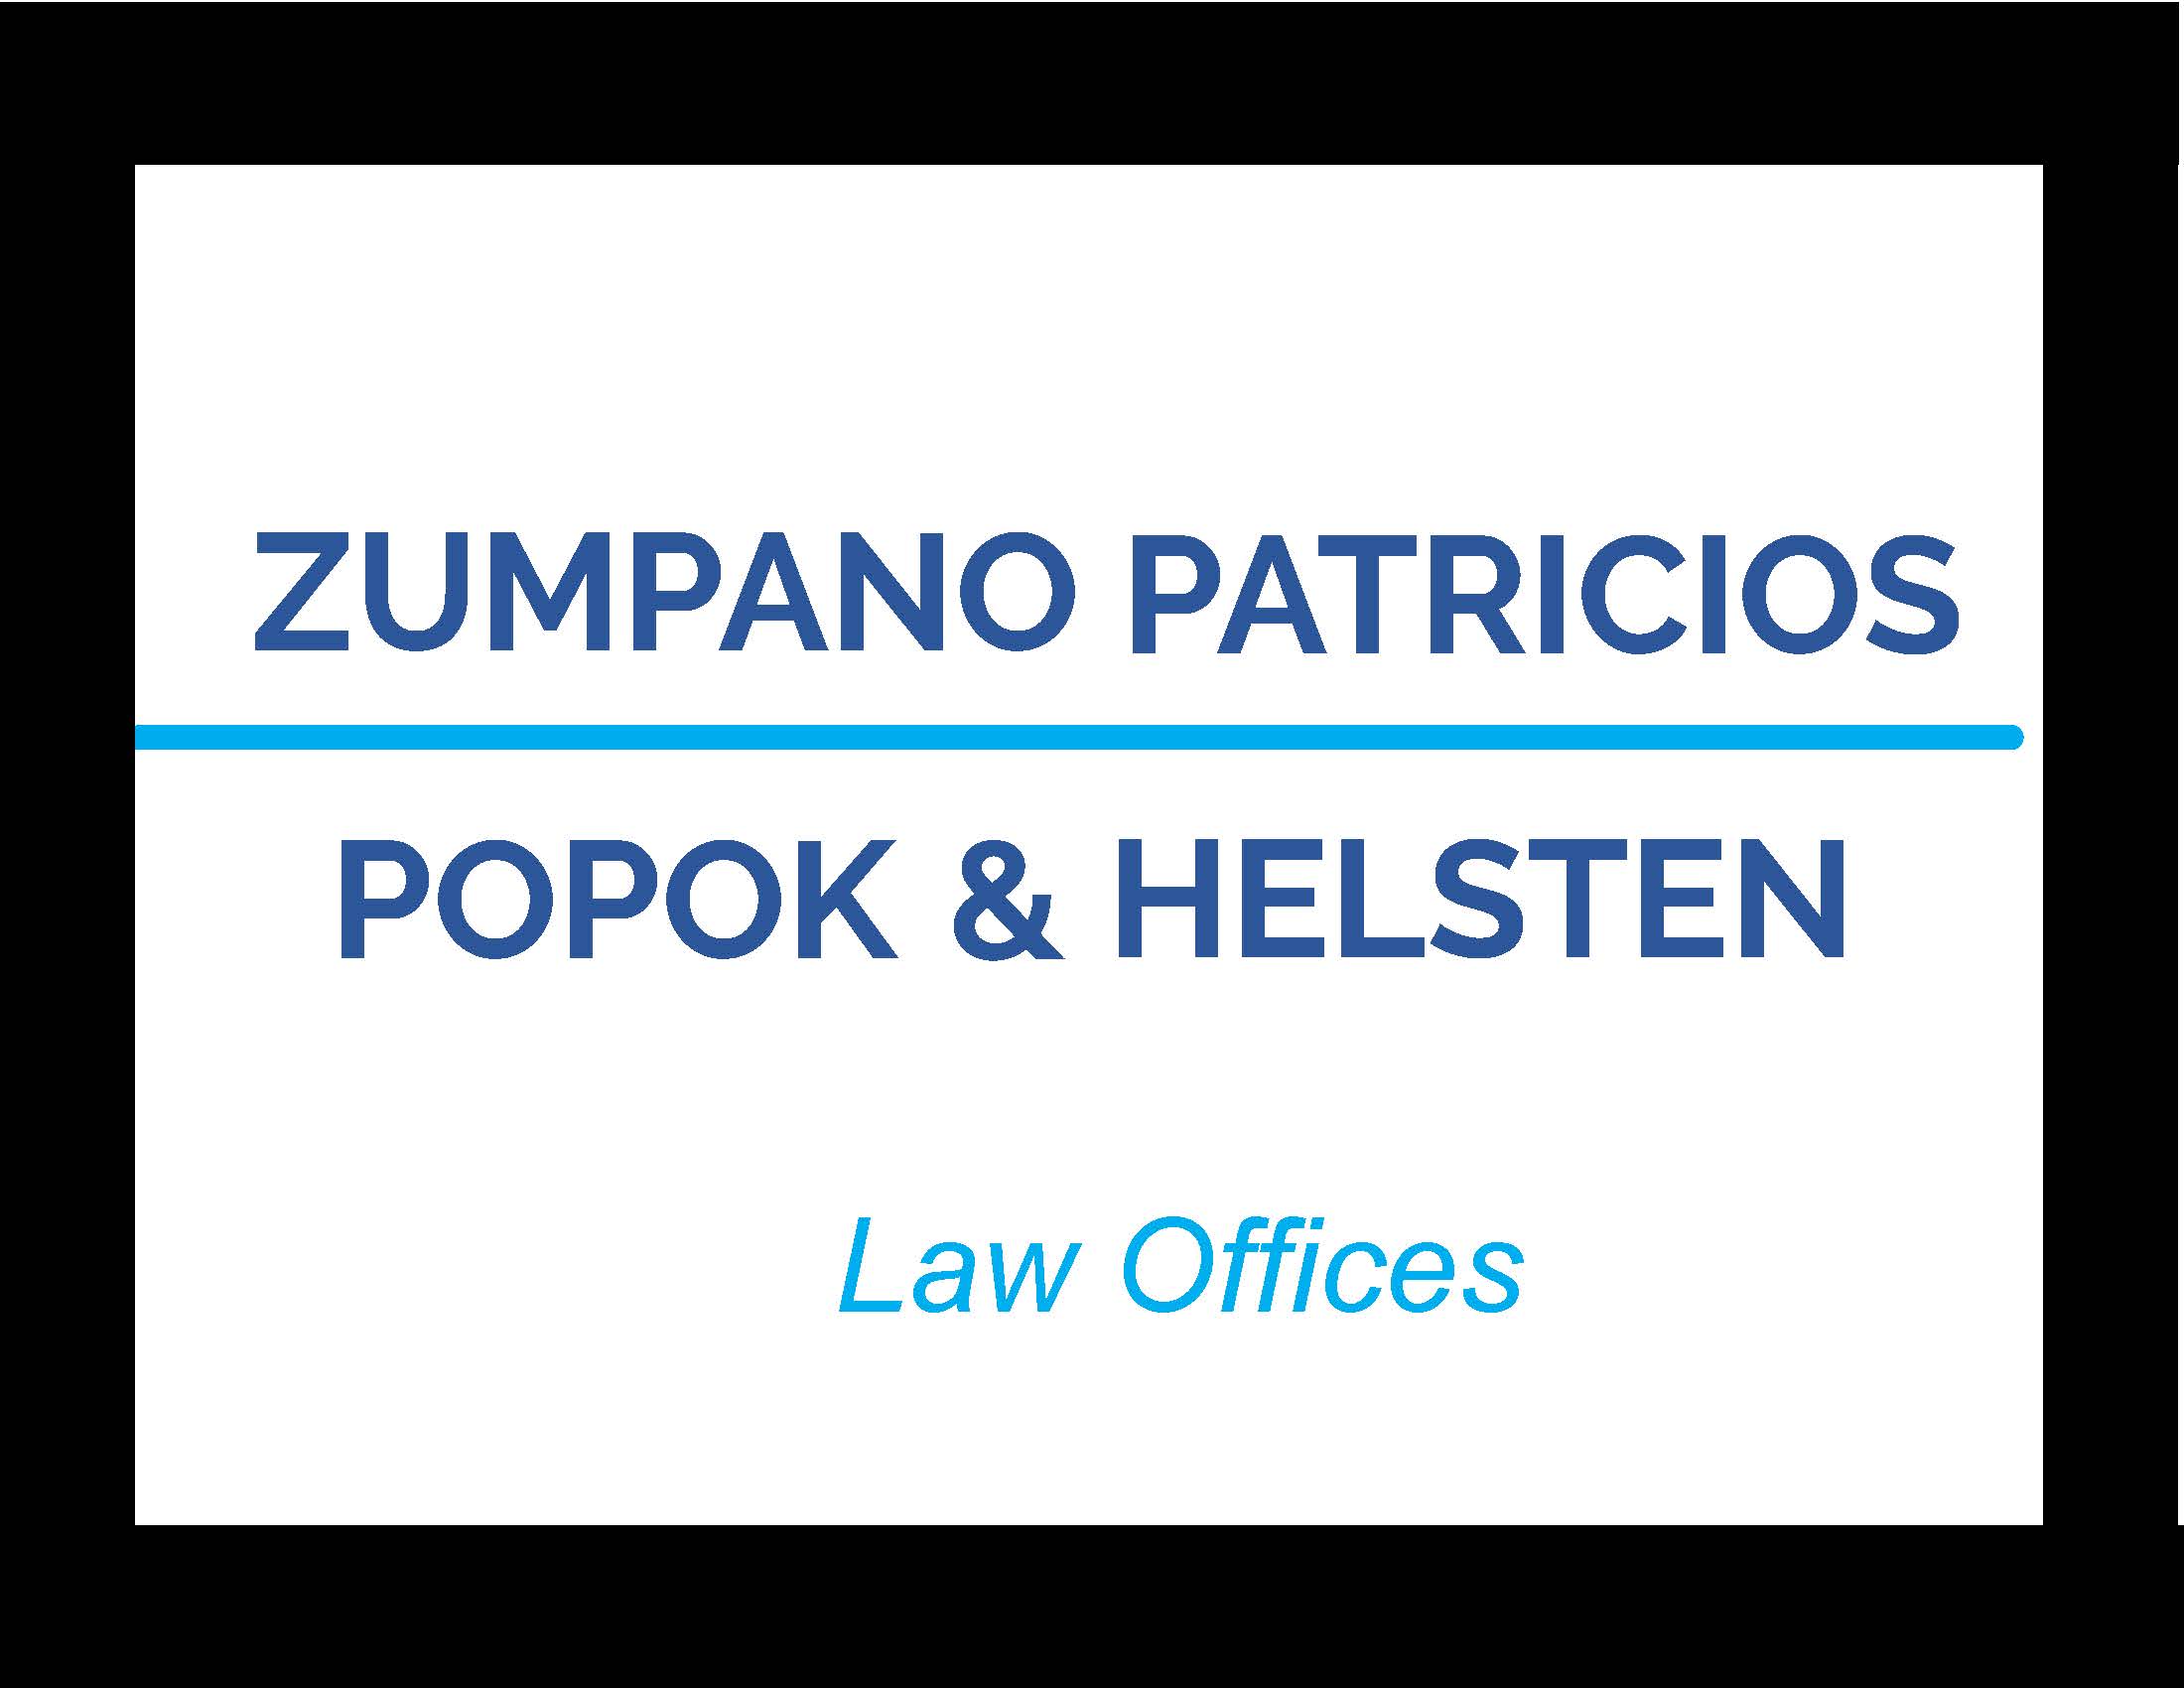 Zumpano Patricios Popok & Helsten, PLLC